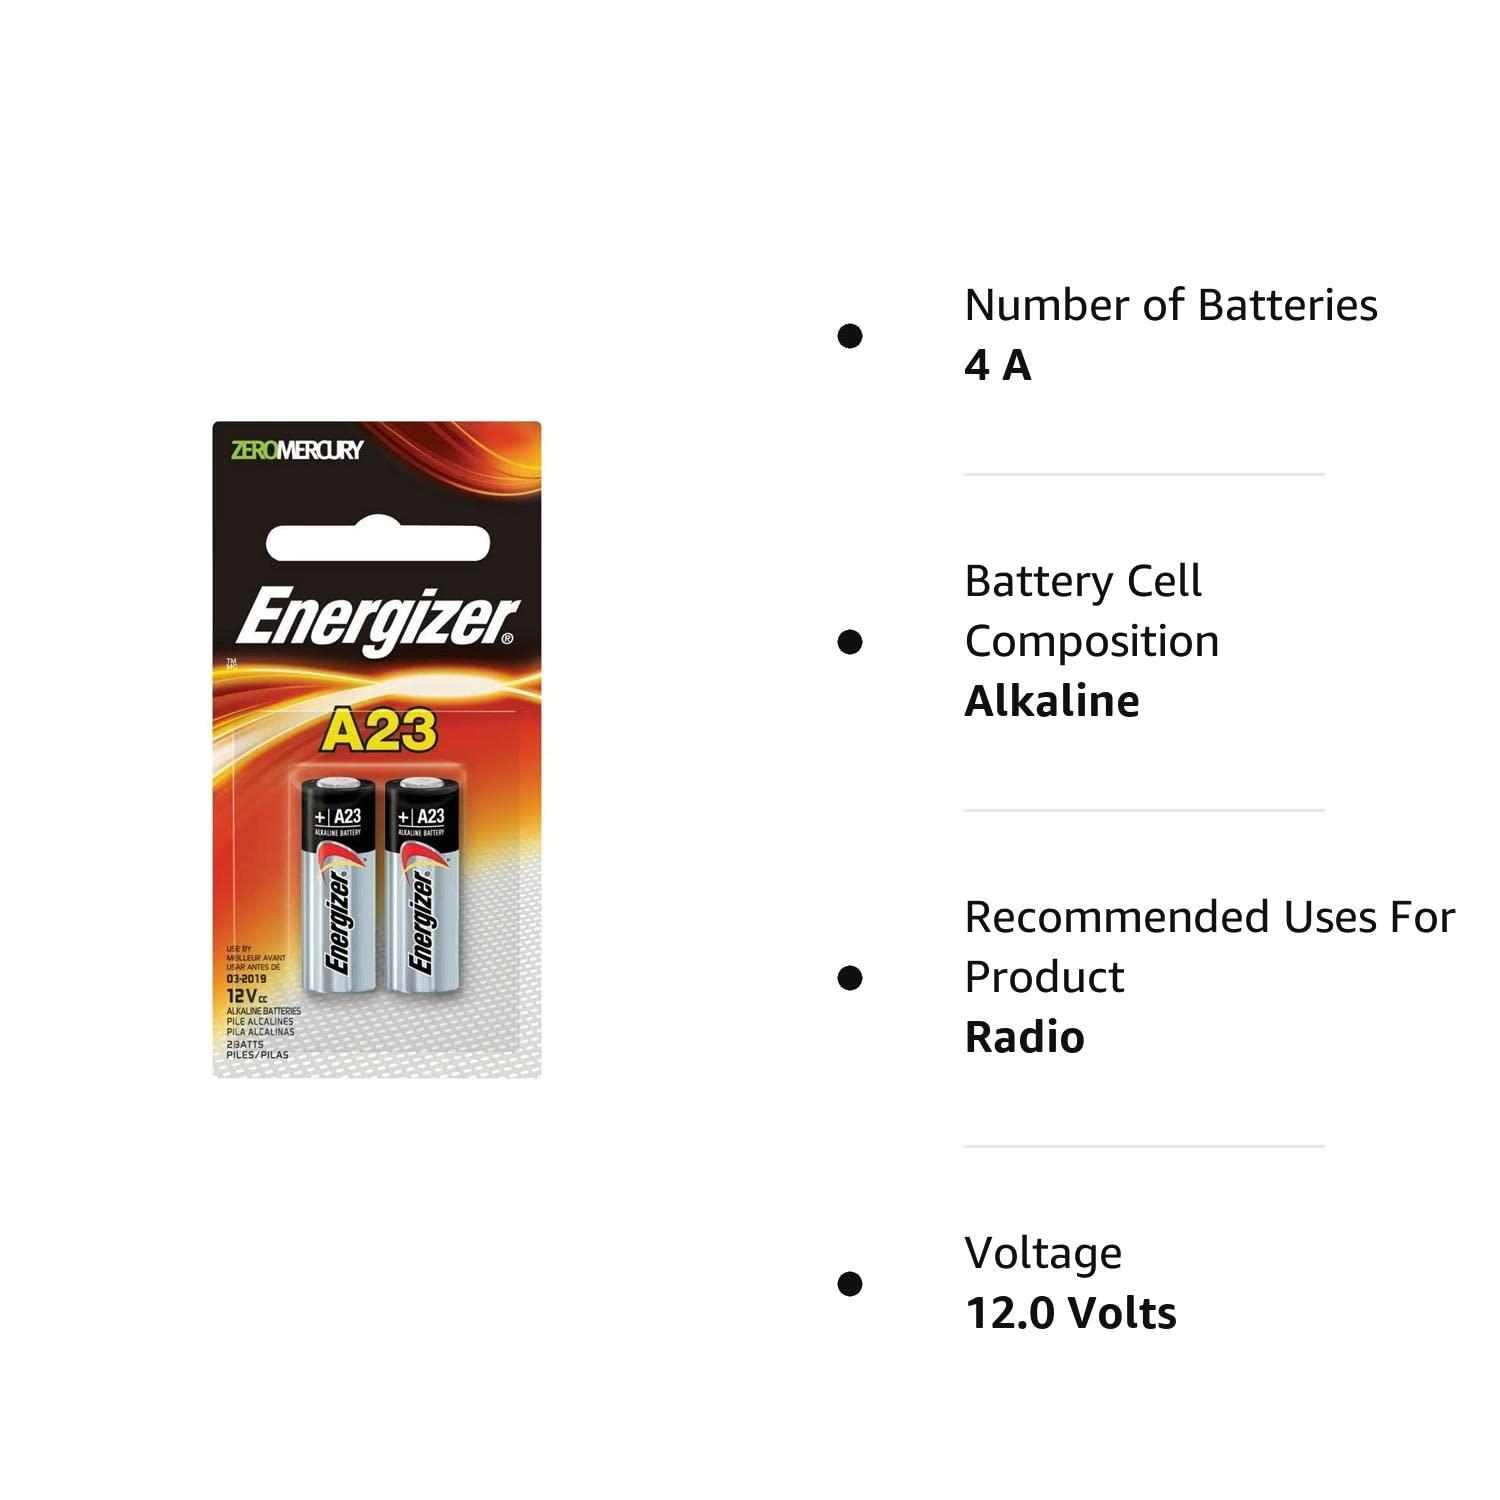 Energizer Zero Mercury Alkaline Batteries A23 2 ea (2 pack)